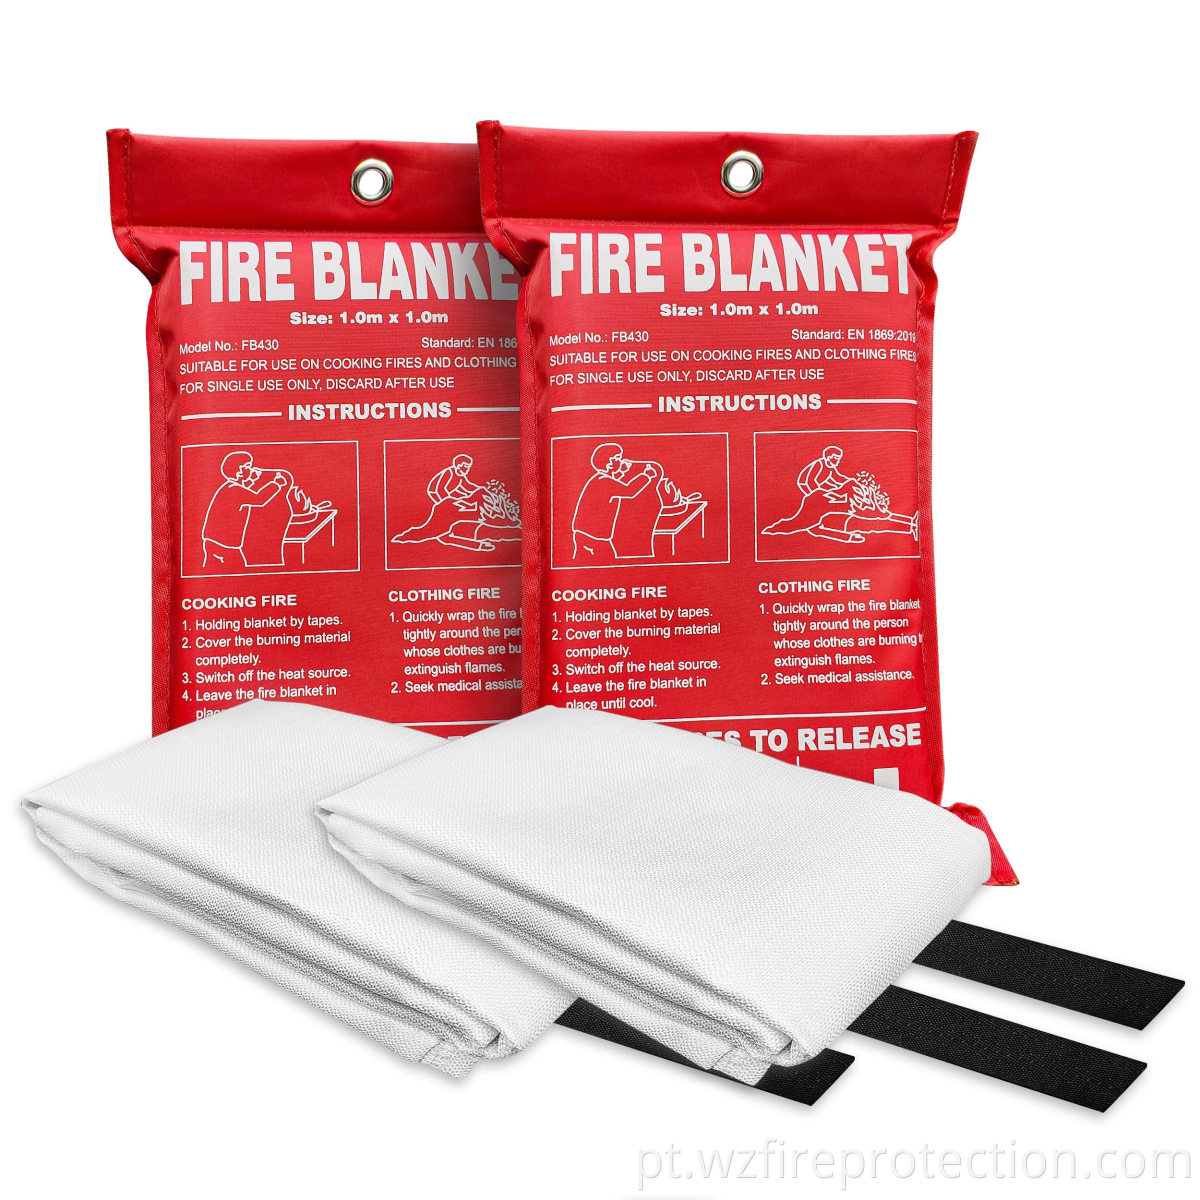 Fire blanket5